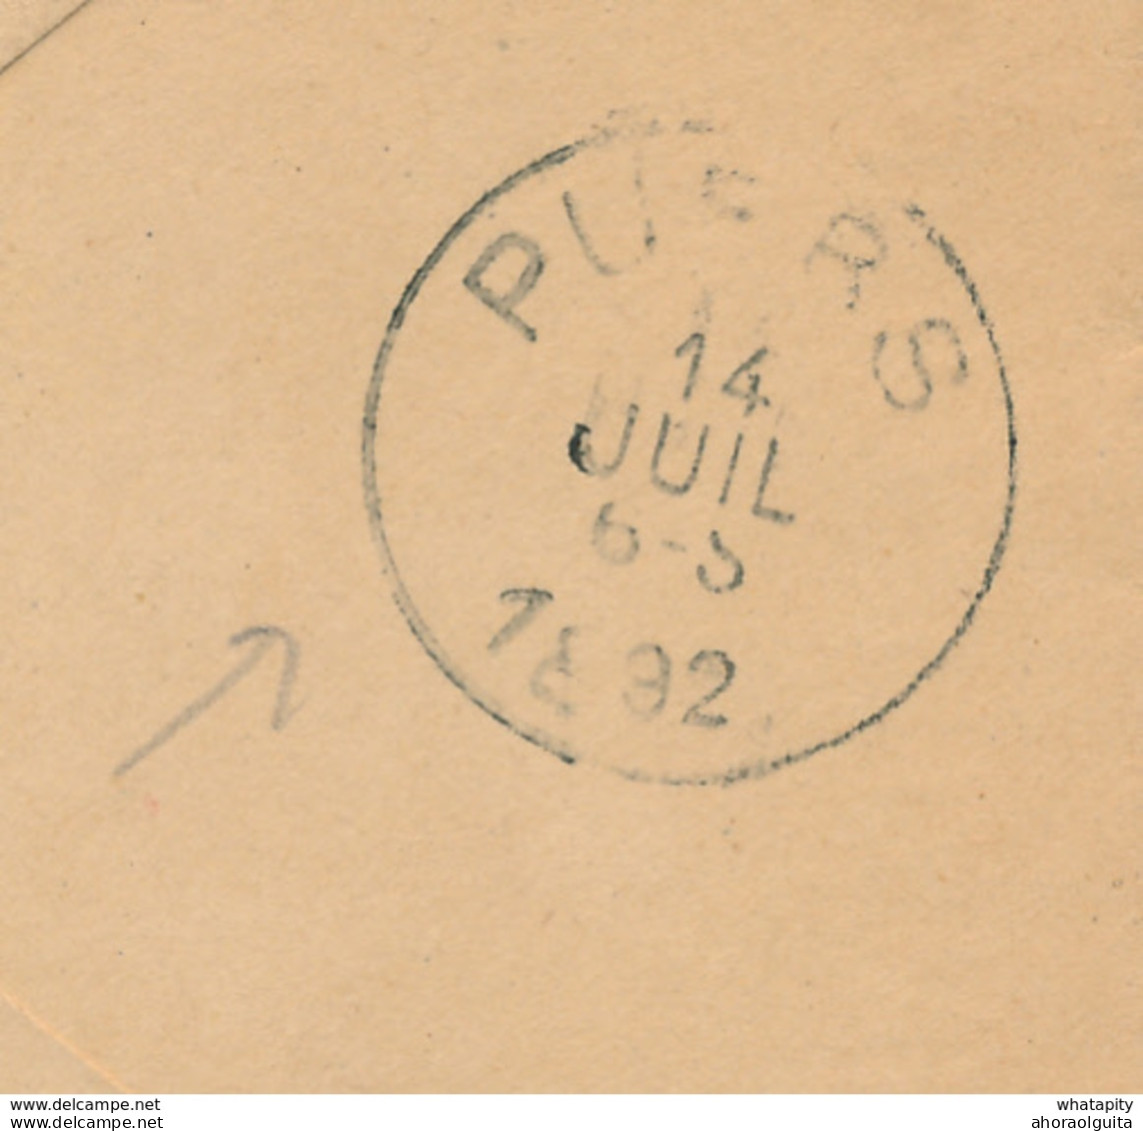 ZZ888 - RARE Enveloppe Préimprimée En S.M. - Cachet 13è Régiment D' Infanterie - NAMUR Station 1892 à HINGENE Via PUERS - Lettres & Documents